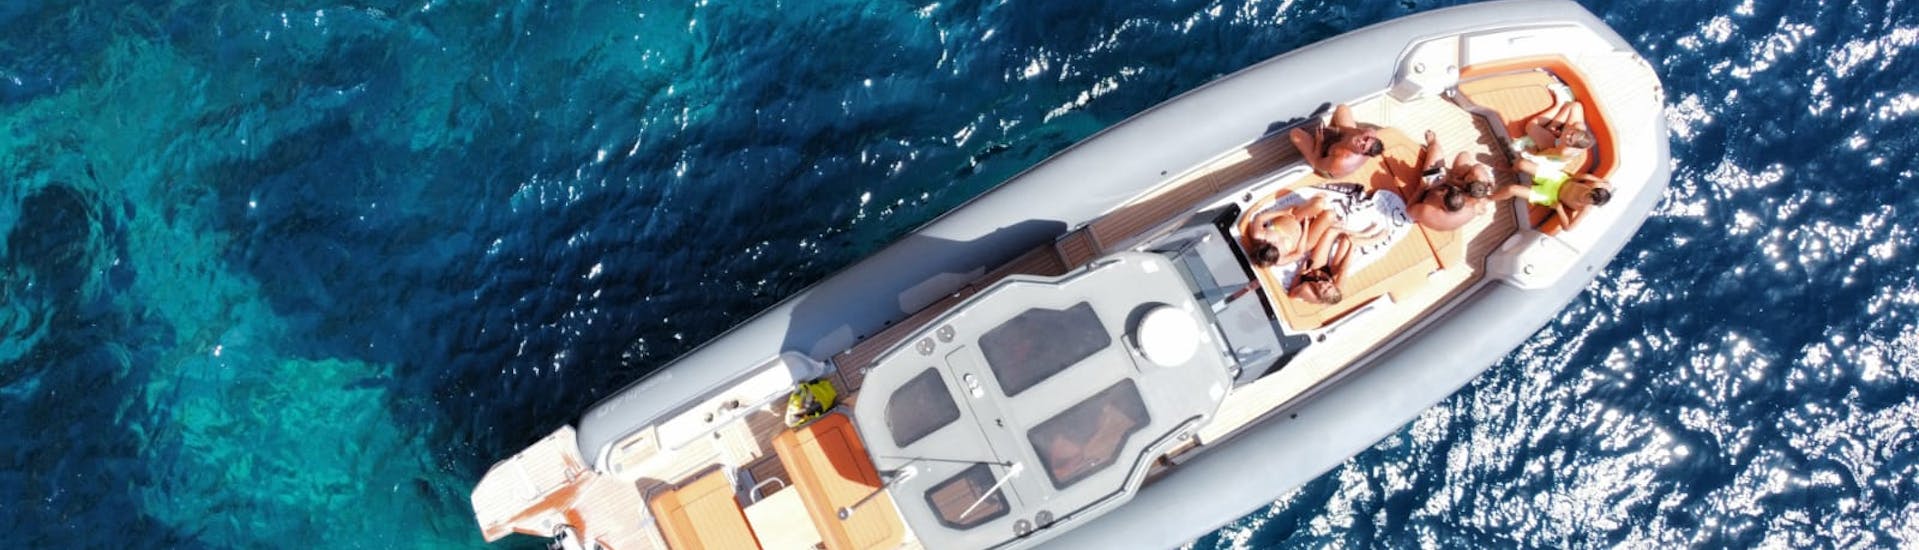 Unser komfortables und geräumiges Boot ist perfekt für die private Bootstour von Olbia zur Insel Tavolara mit Schnorcheln.